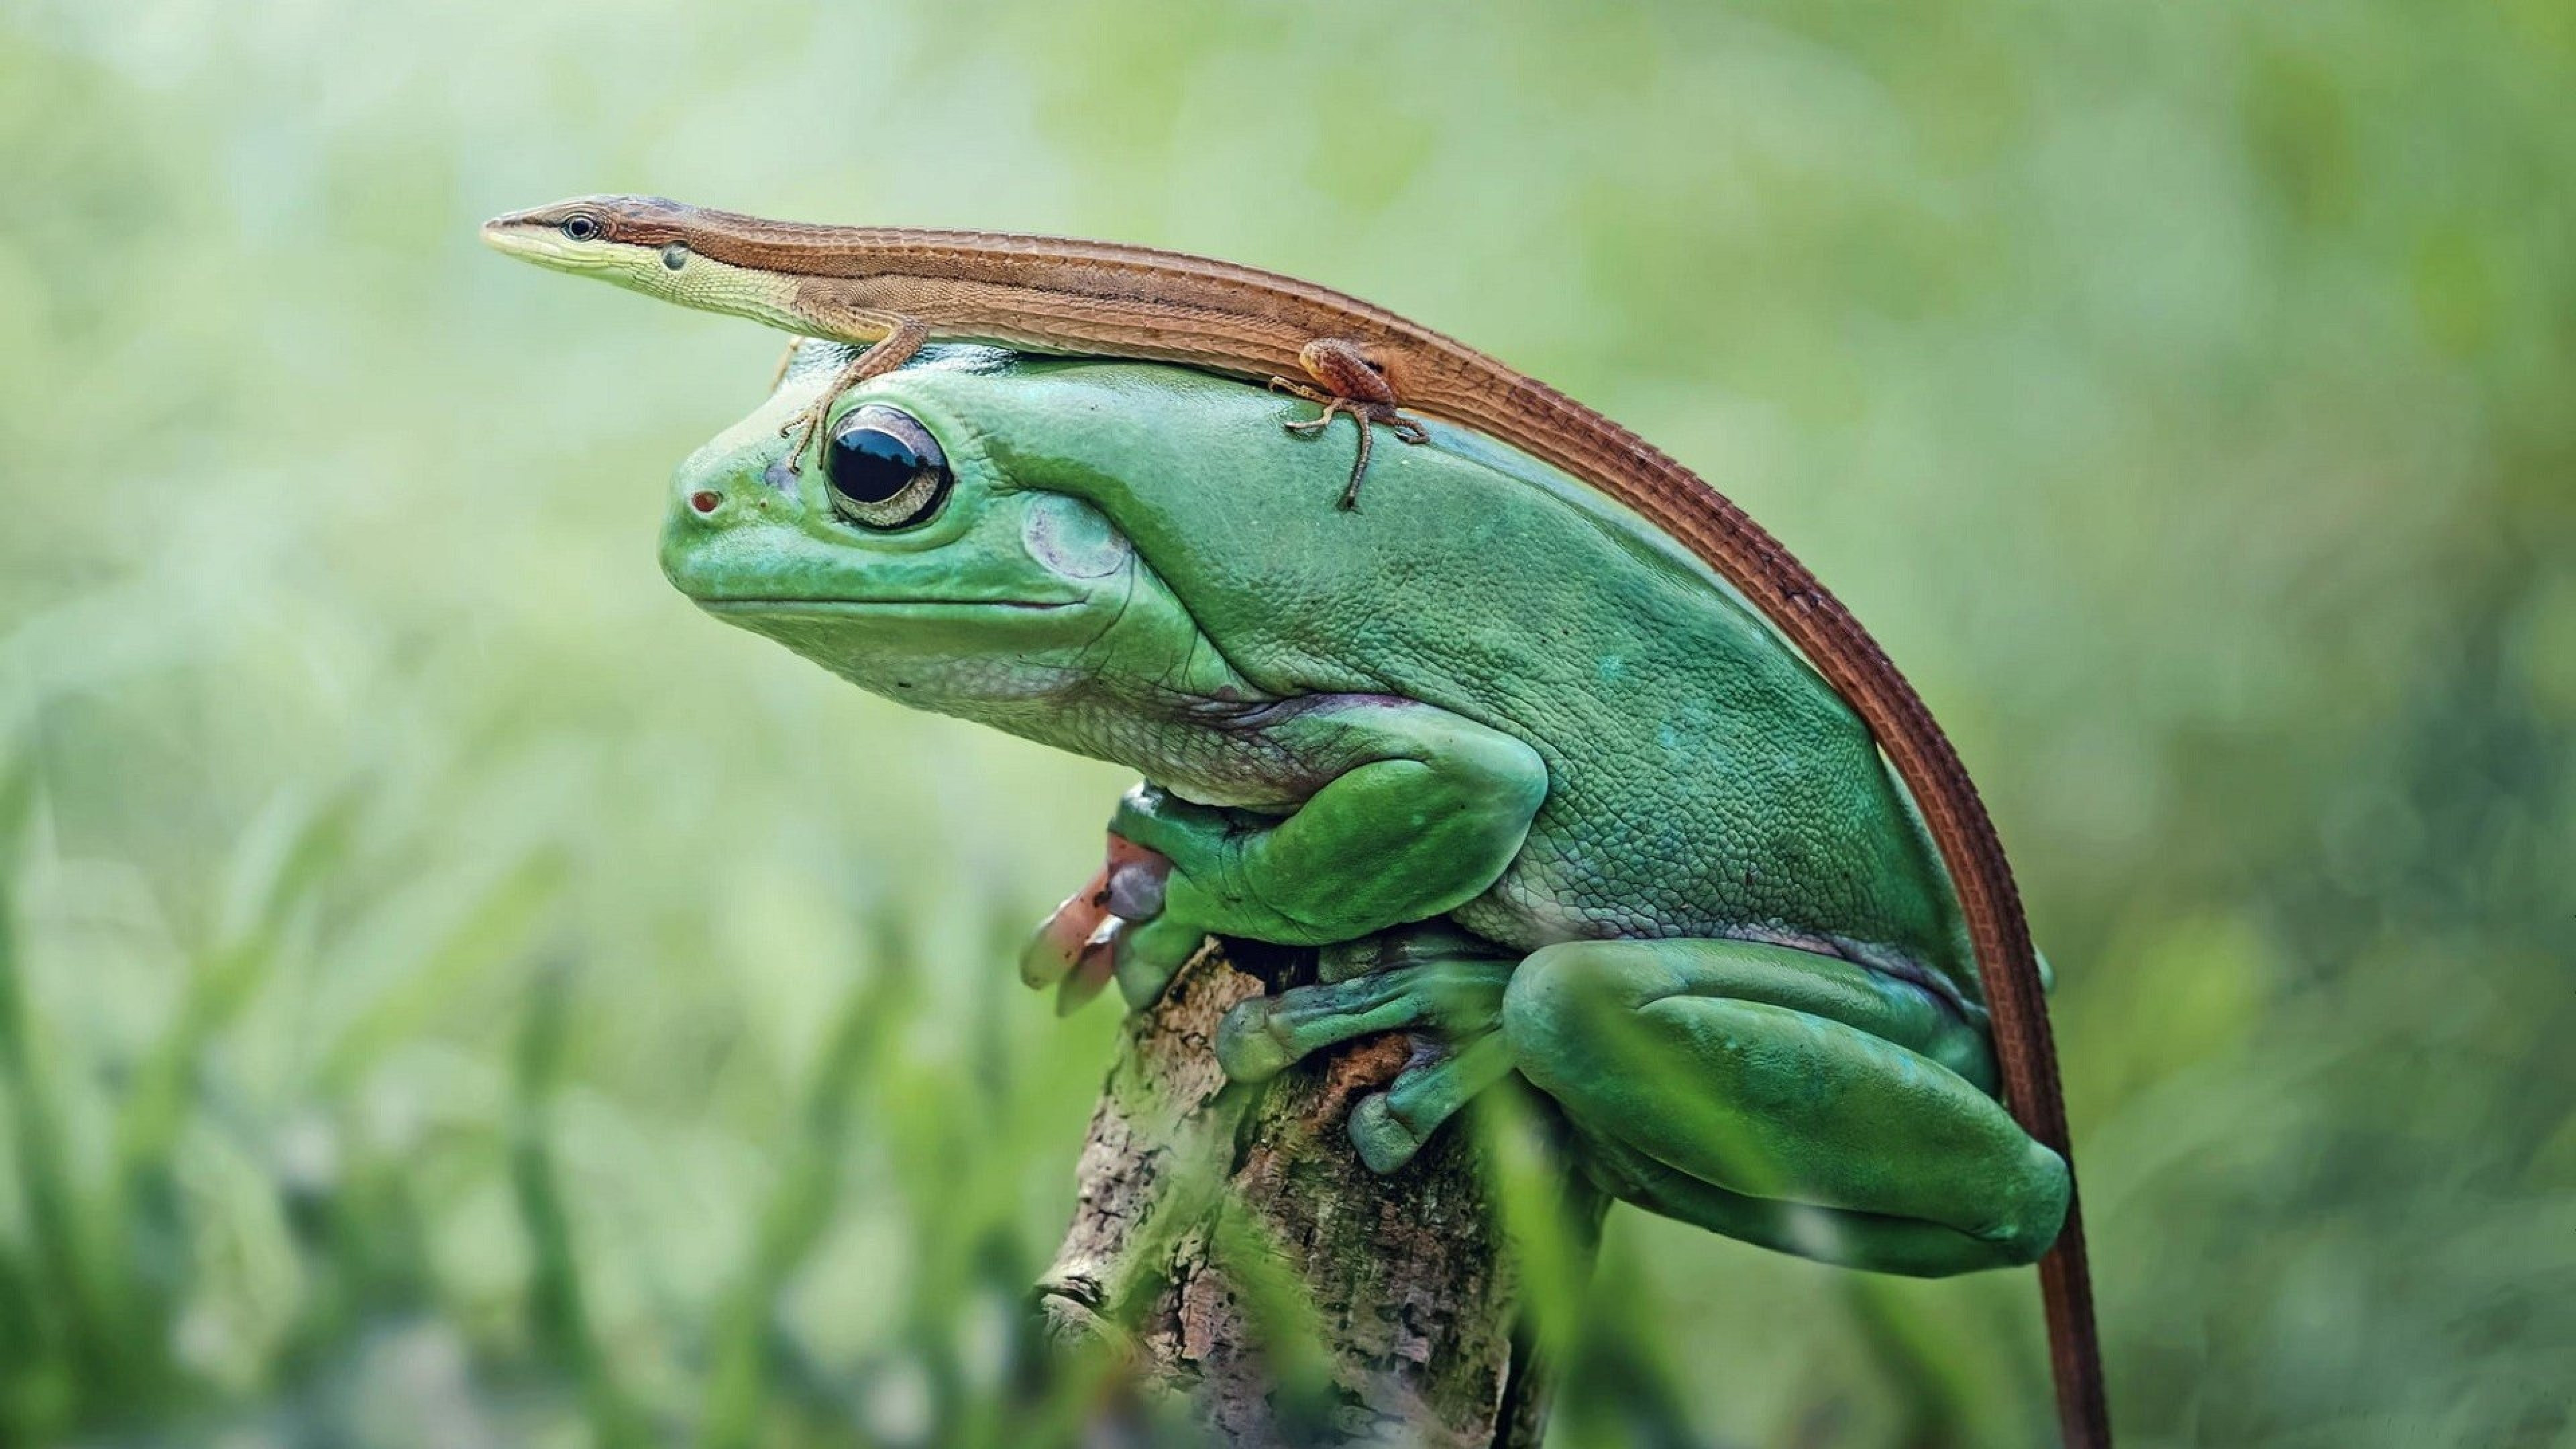 Frog and lizard wallpapers, Nature's inhabitants, Delicate balance, Coexistence, 3840x2160 4K Desktop